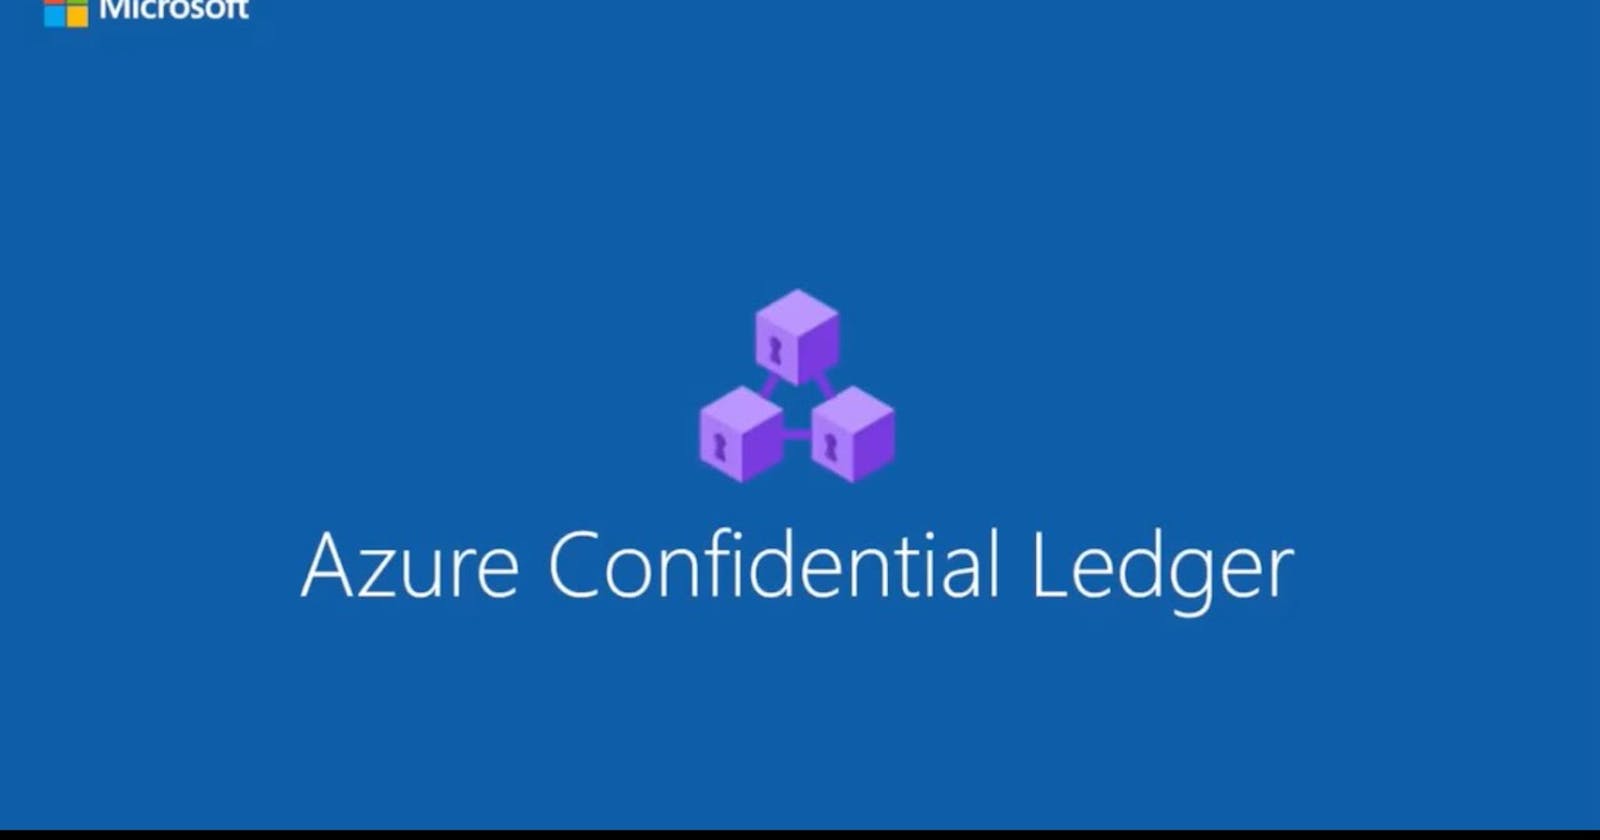 Azure Confidential Ledger: A Journey into Next-Gen Security